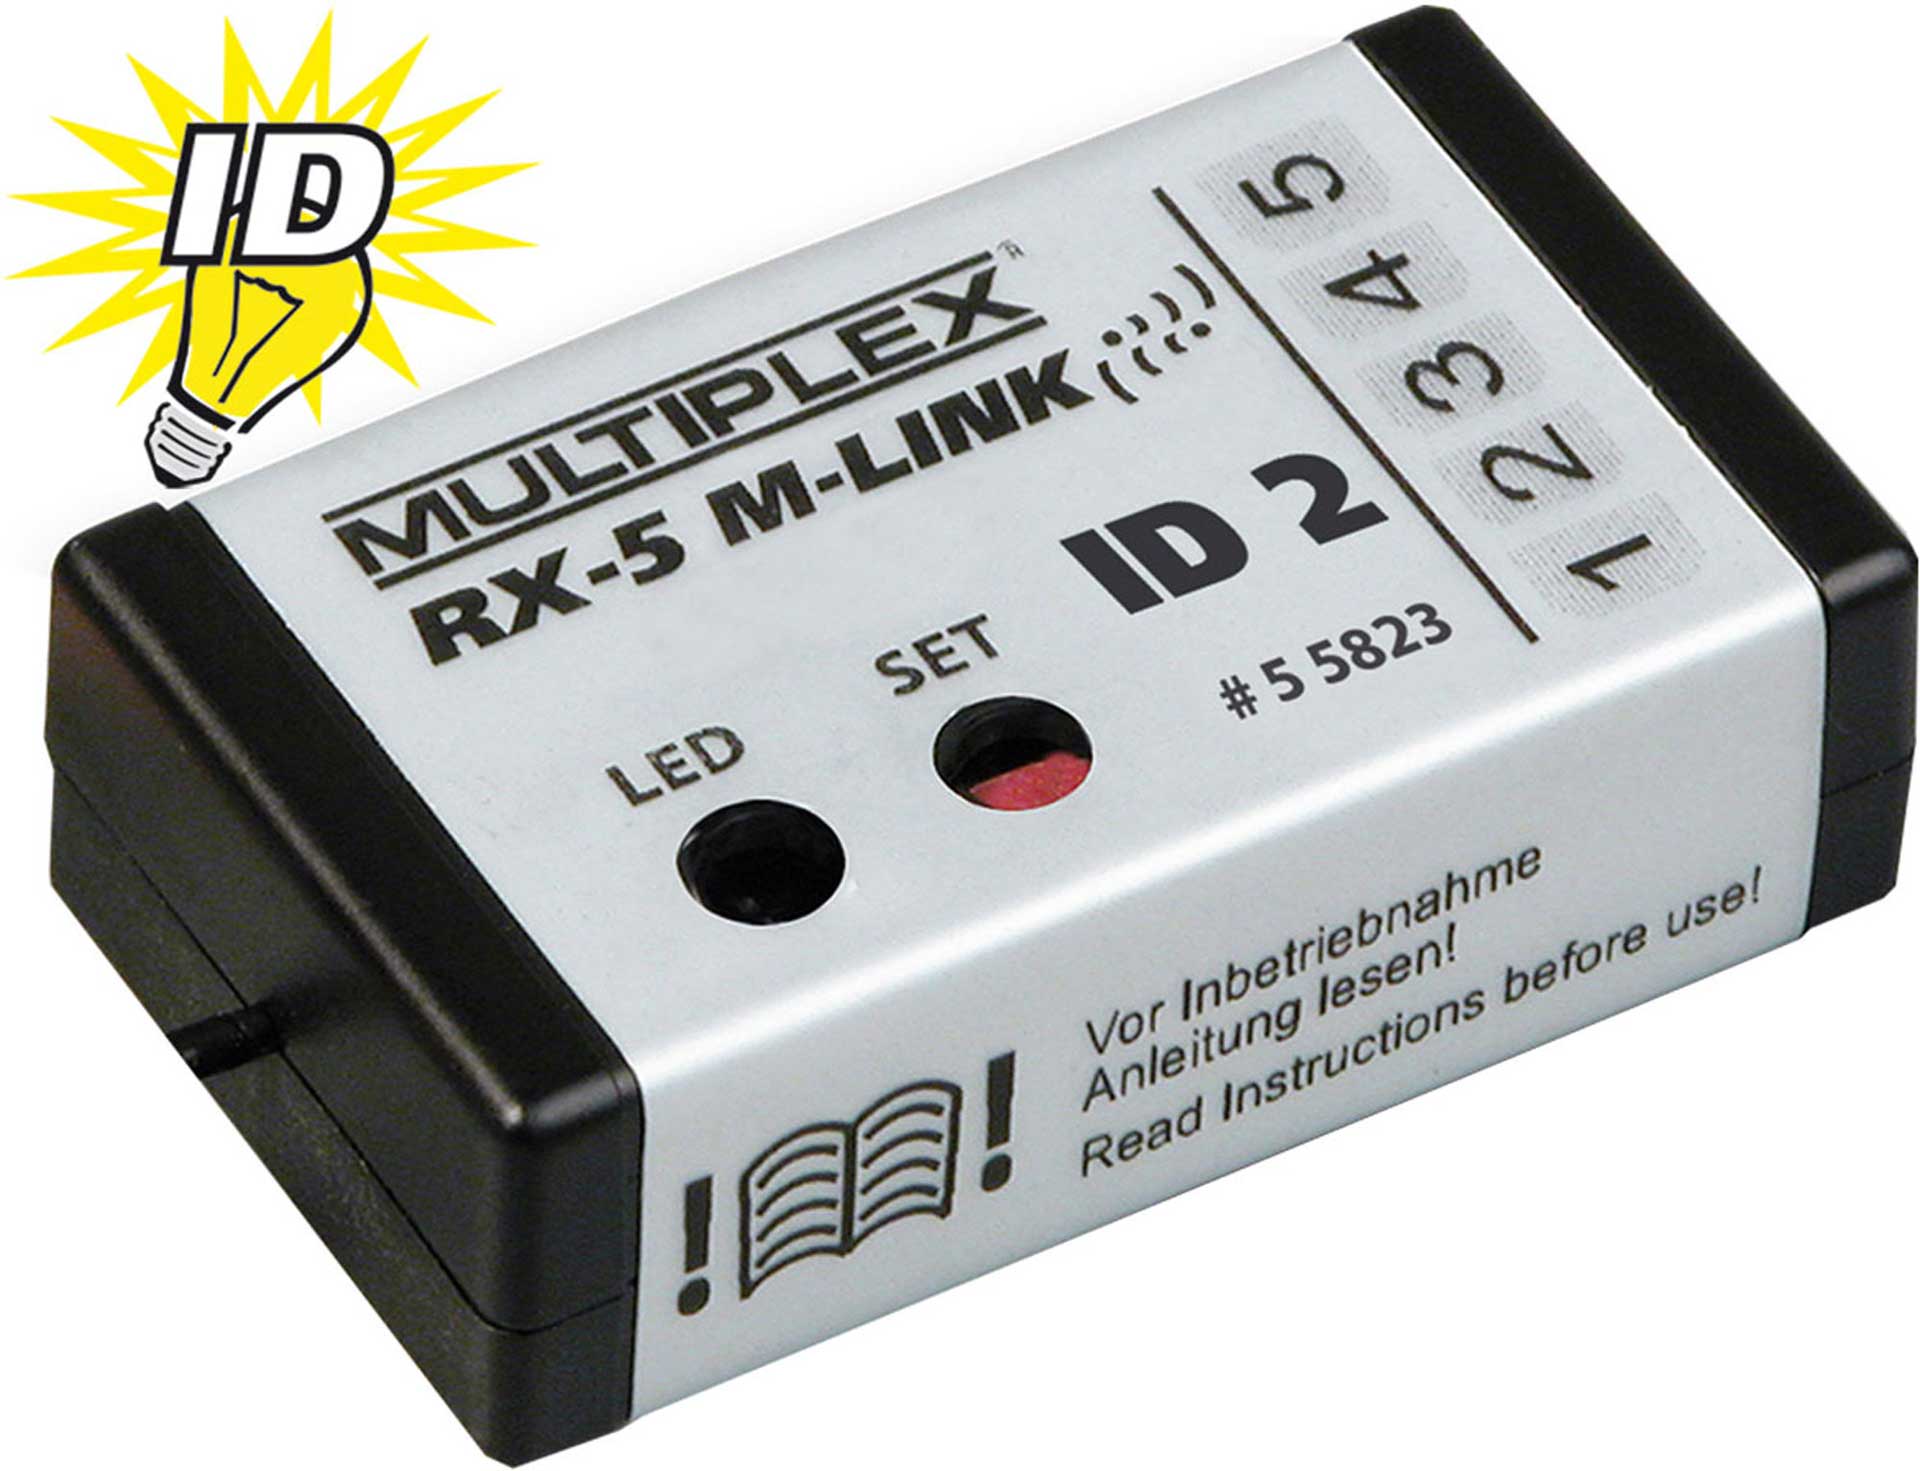 MULTIPLEX RX-5 SMART ID 2 "E.STAR II" 2.4GHZ M-LIN